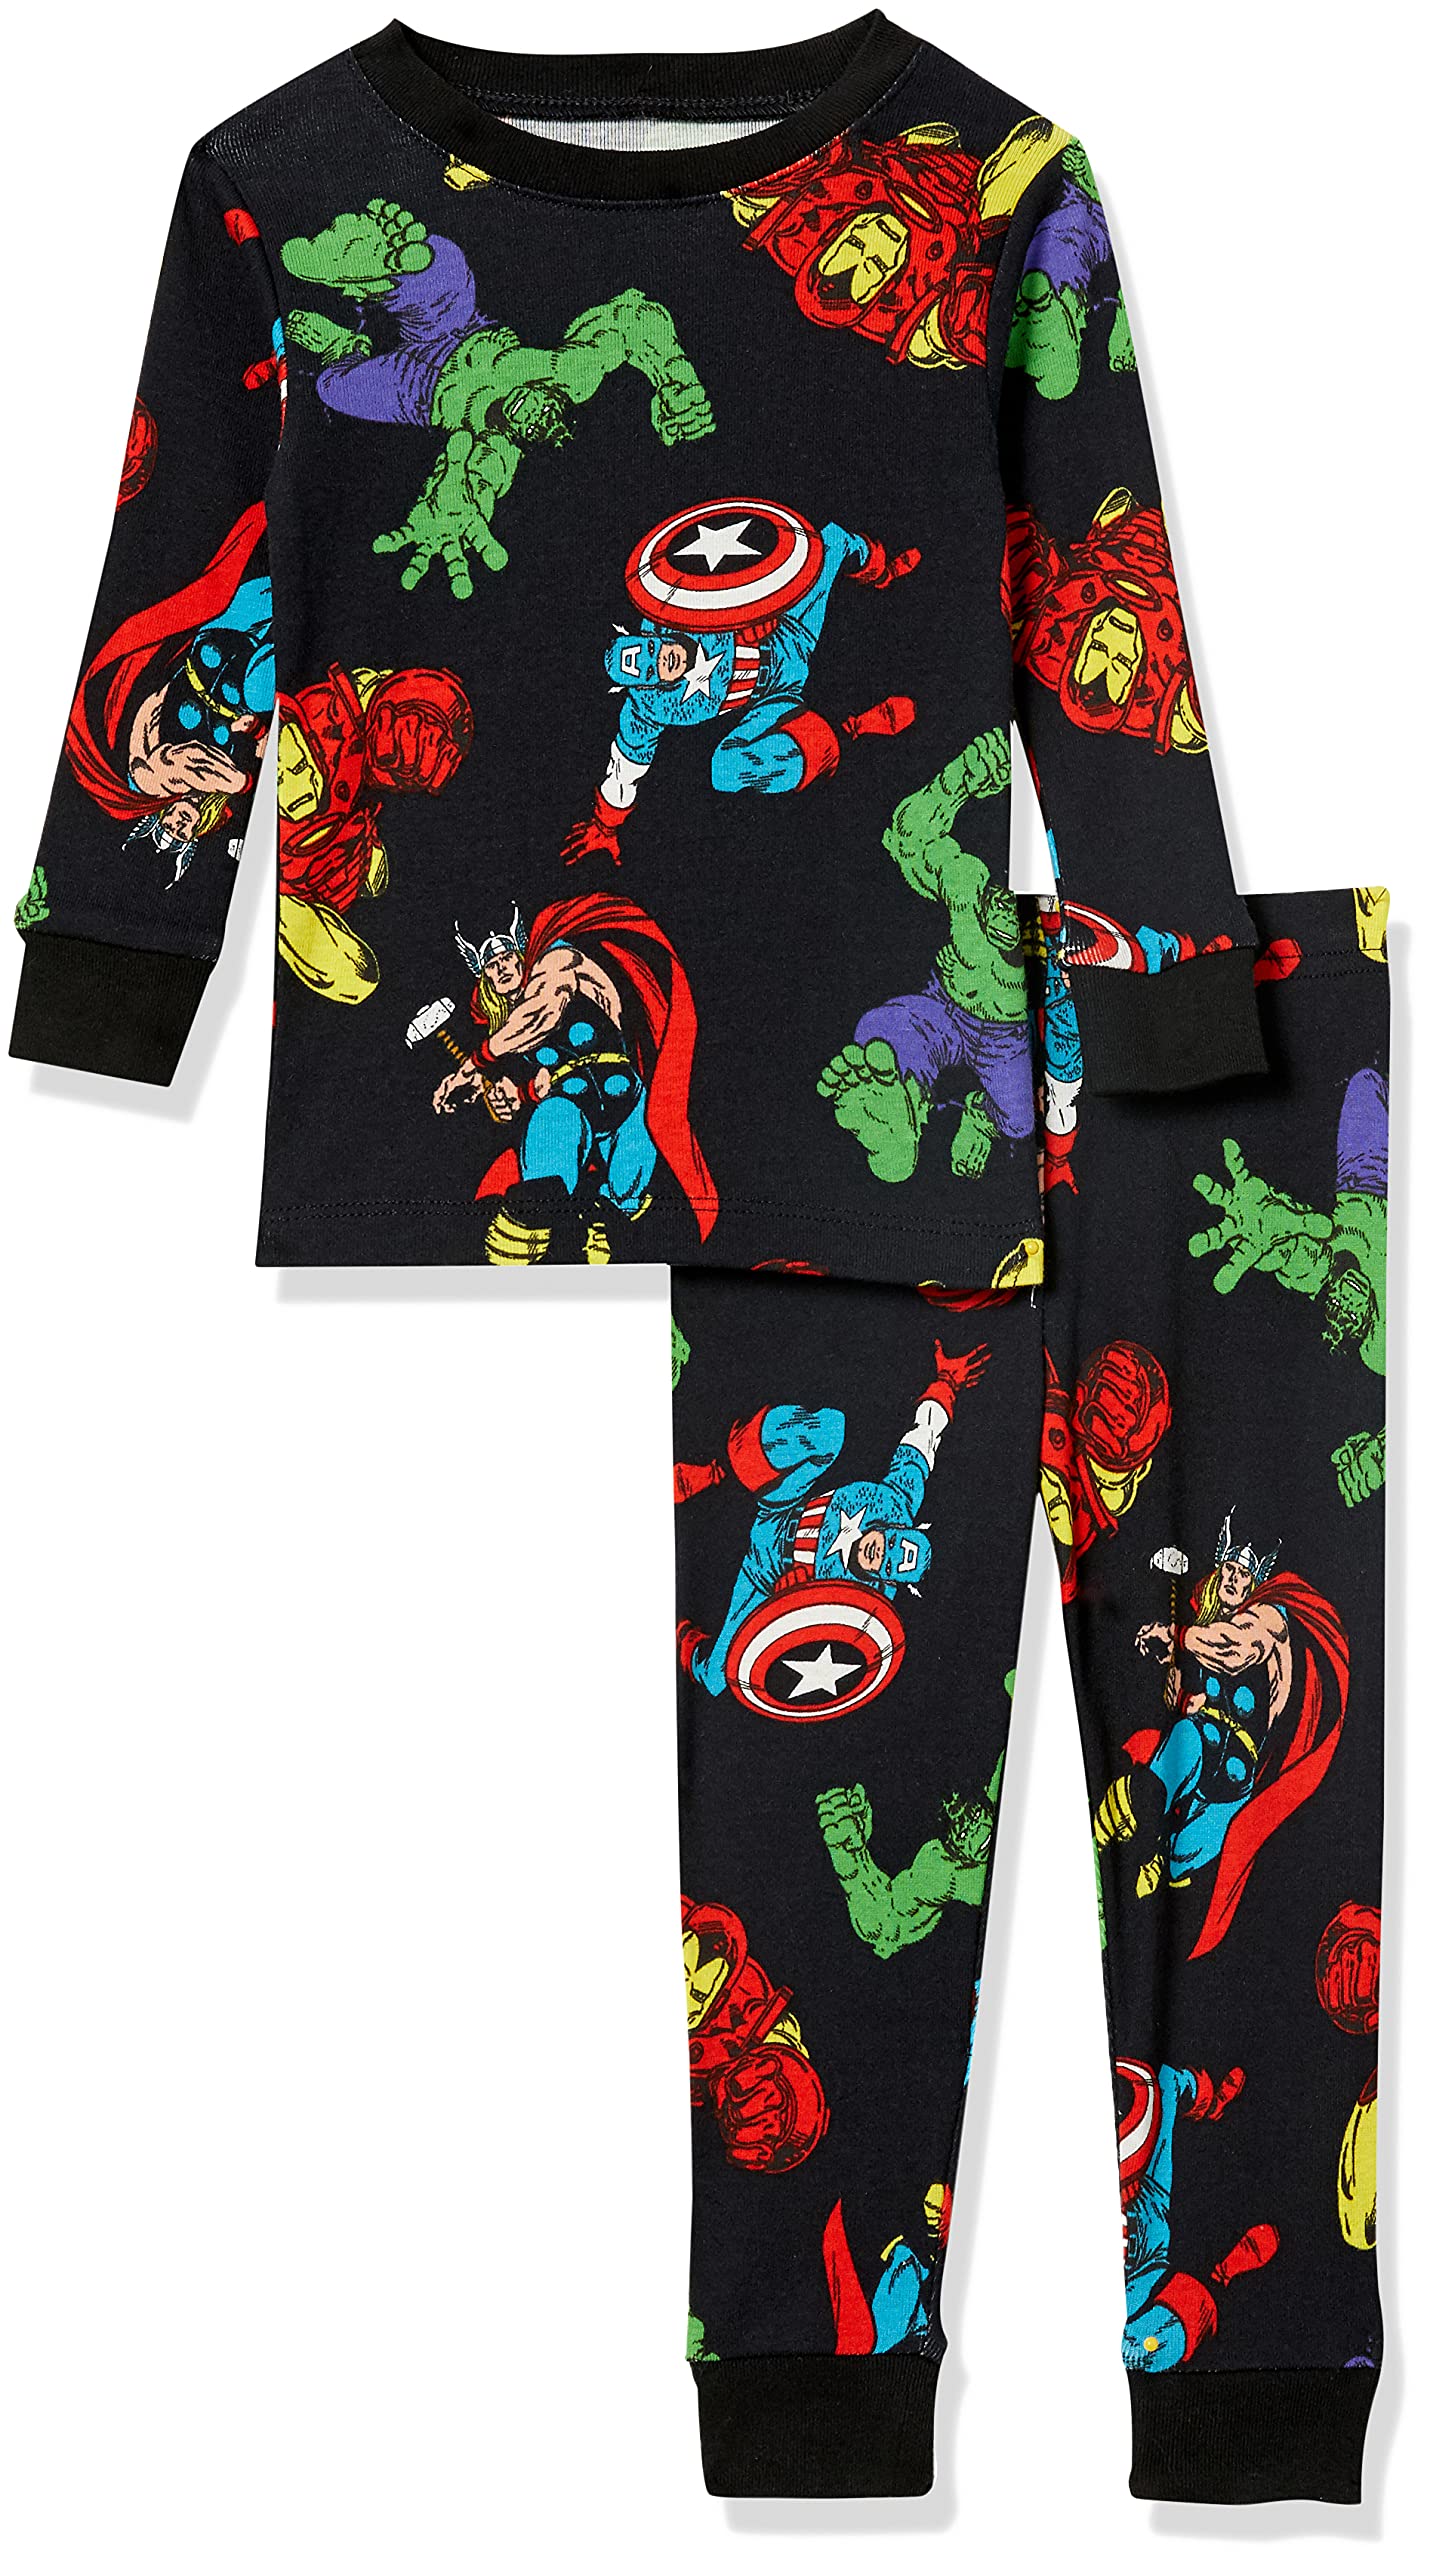 Amazon Essentials Marvel Boys and Toddlers' Pajama Sleep Sets, Multipacks